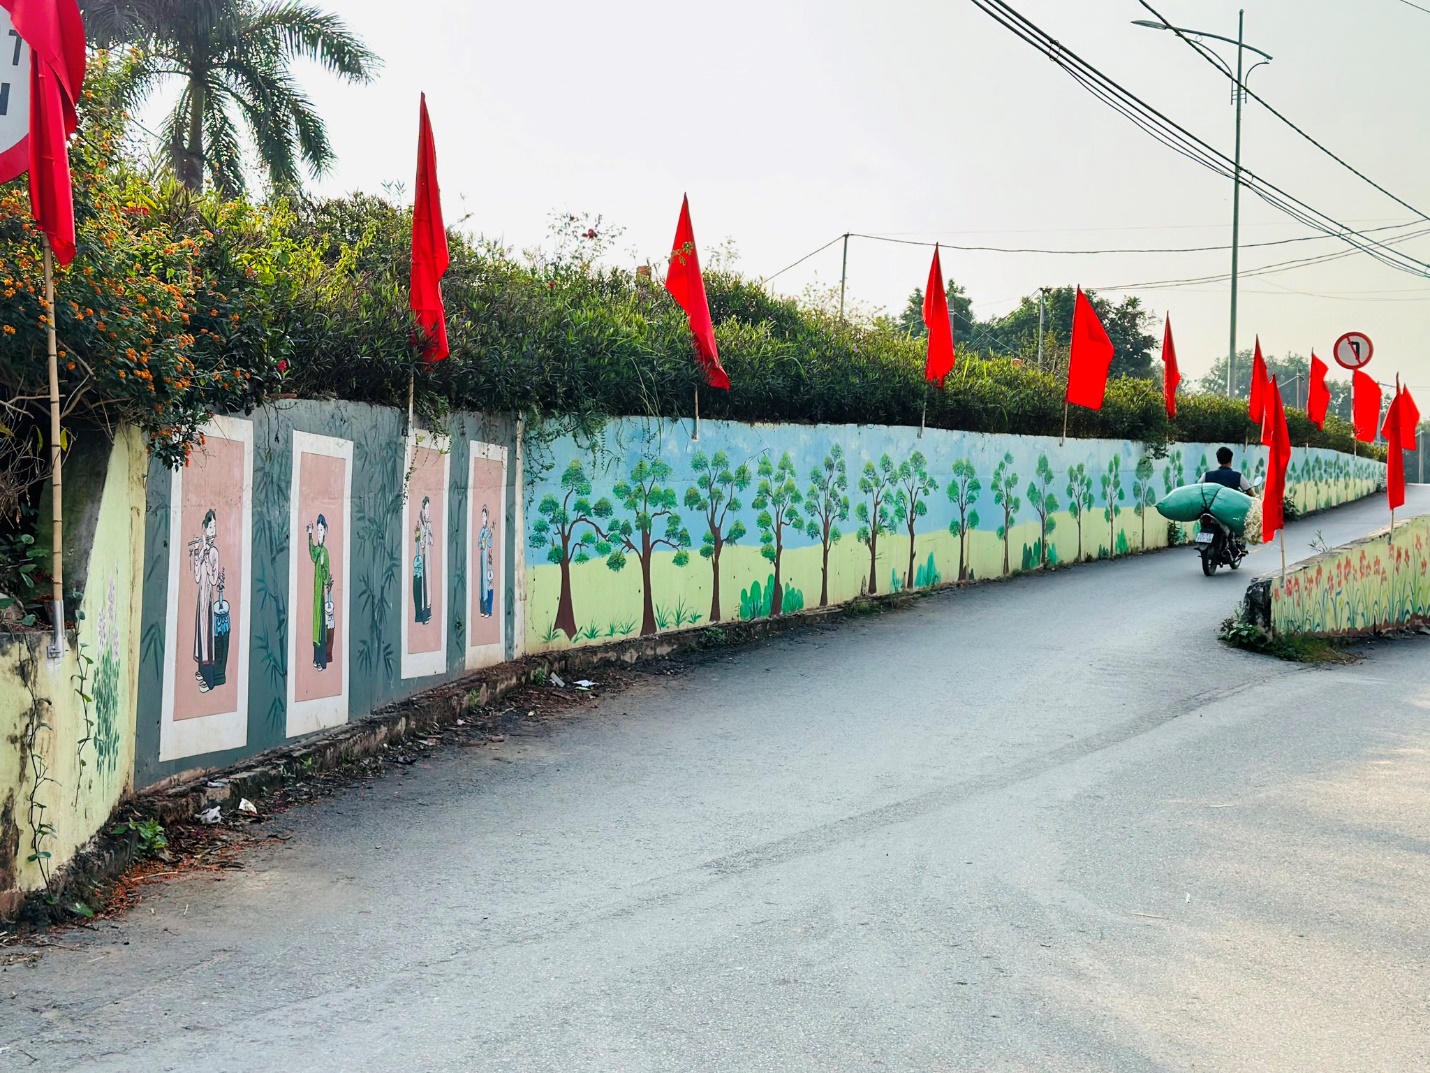 Triền đê “đẹp bậc nhất” làng quê Việt với bích họa dài hàng km, hoa cỏ khoe sắc ngày Tết - 7